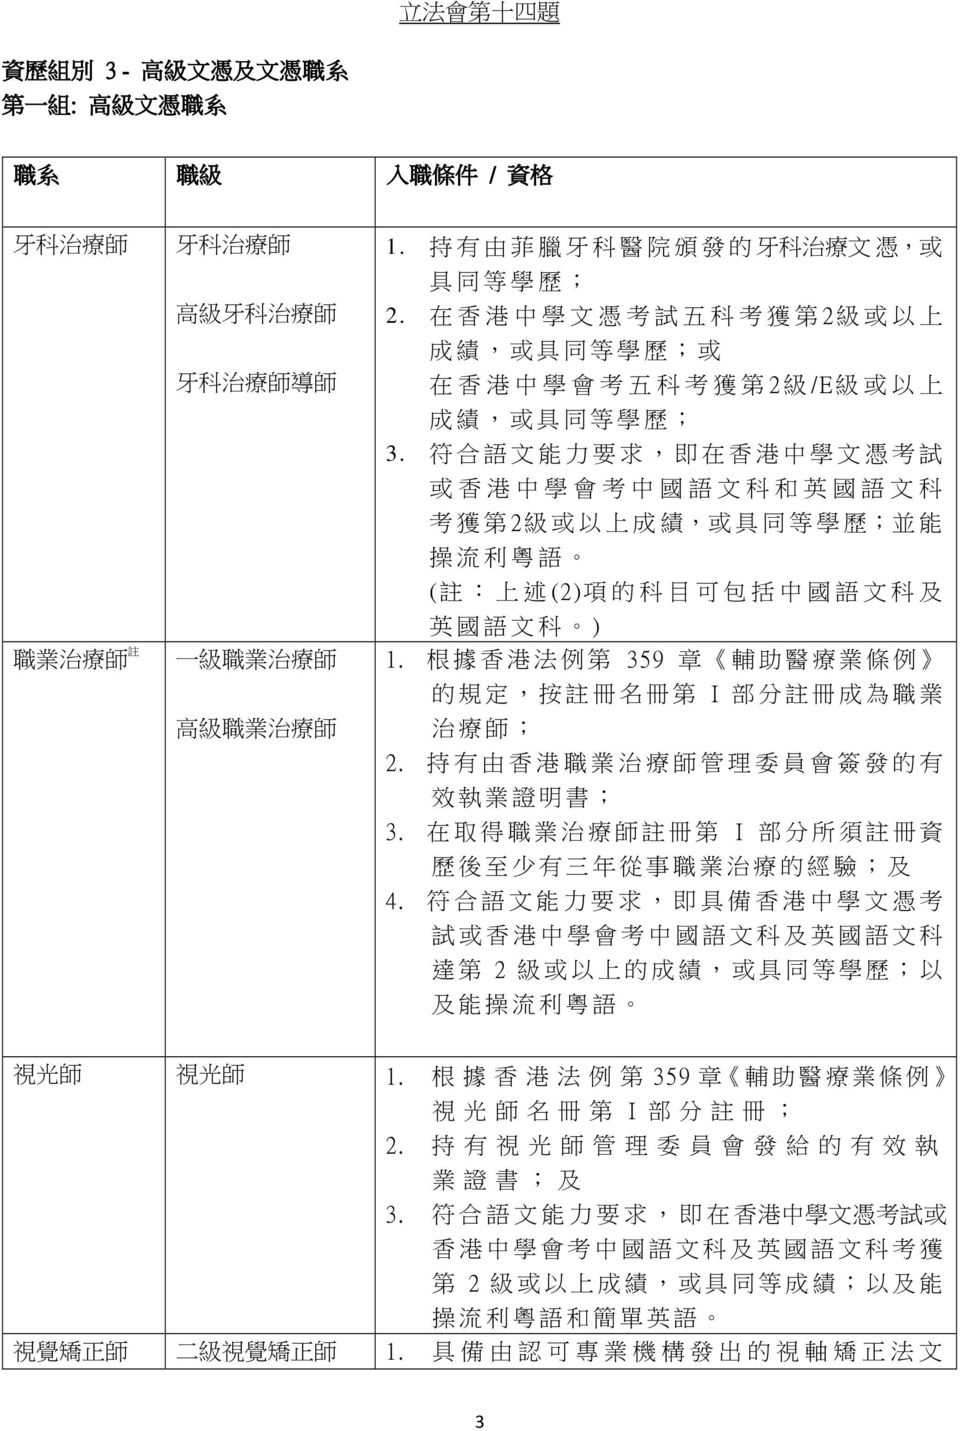 符 合 語 文 能 力 要 求, 即 在 香 港 中 學 文 憑 考 試 或 香 港 中 學 會 考 中 國 語 文 科 和 英 國 語 文 科 考 獲 第 2 級 或 以 上 成 績, 或 具 同 等 學 歷 ; 並 能 操 流 利 粵 語 ( 註 : 上 述 (2) 項 的 科 目 可 包 括 中 國 語 文 科 及 英 國 語 文 科 ) 1.